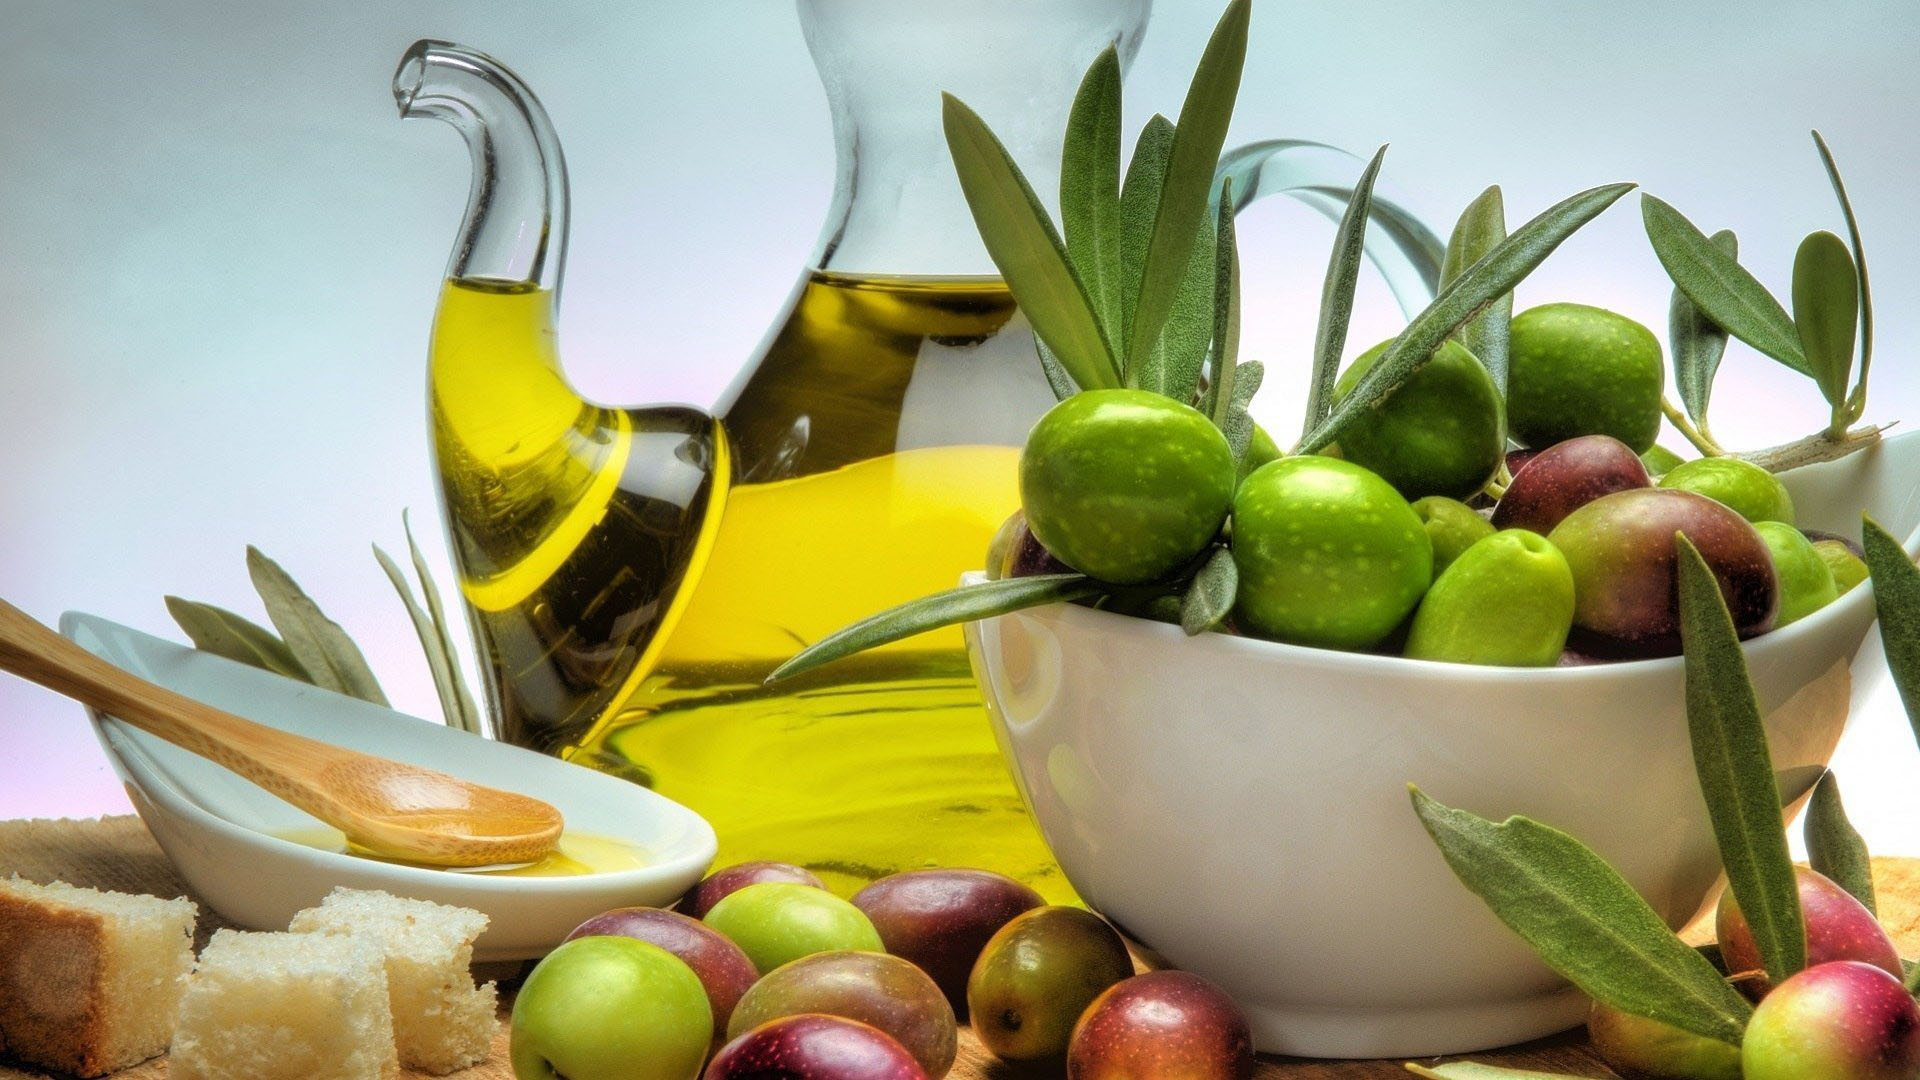 eliko oliva garden olive oil